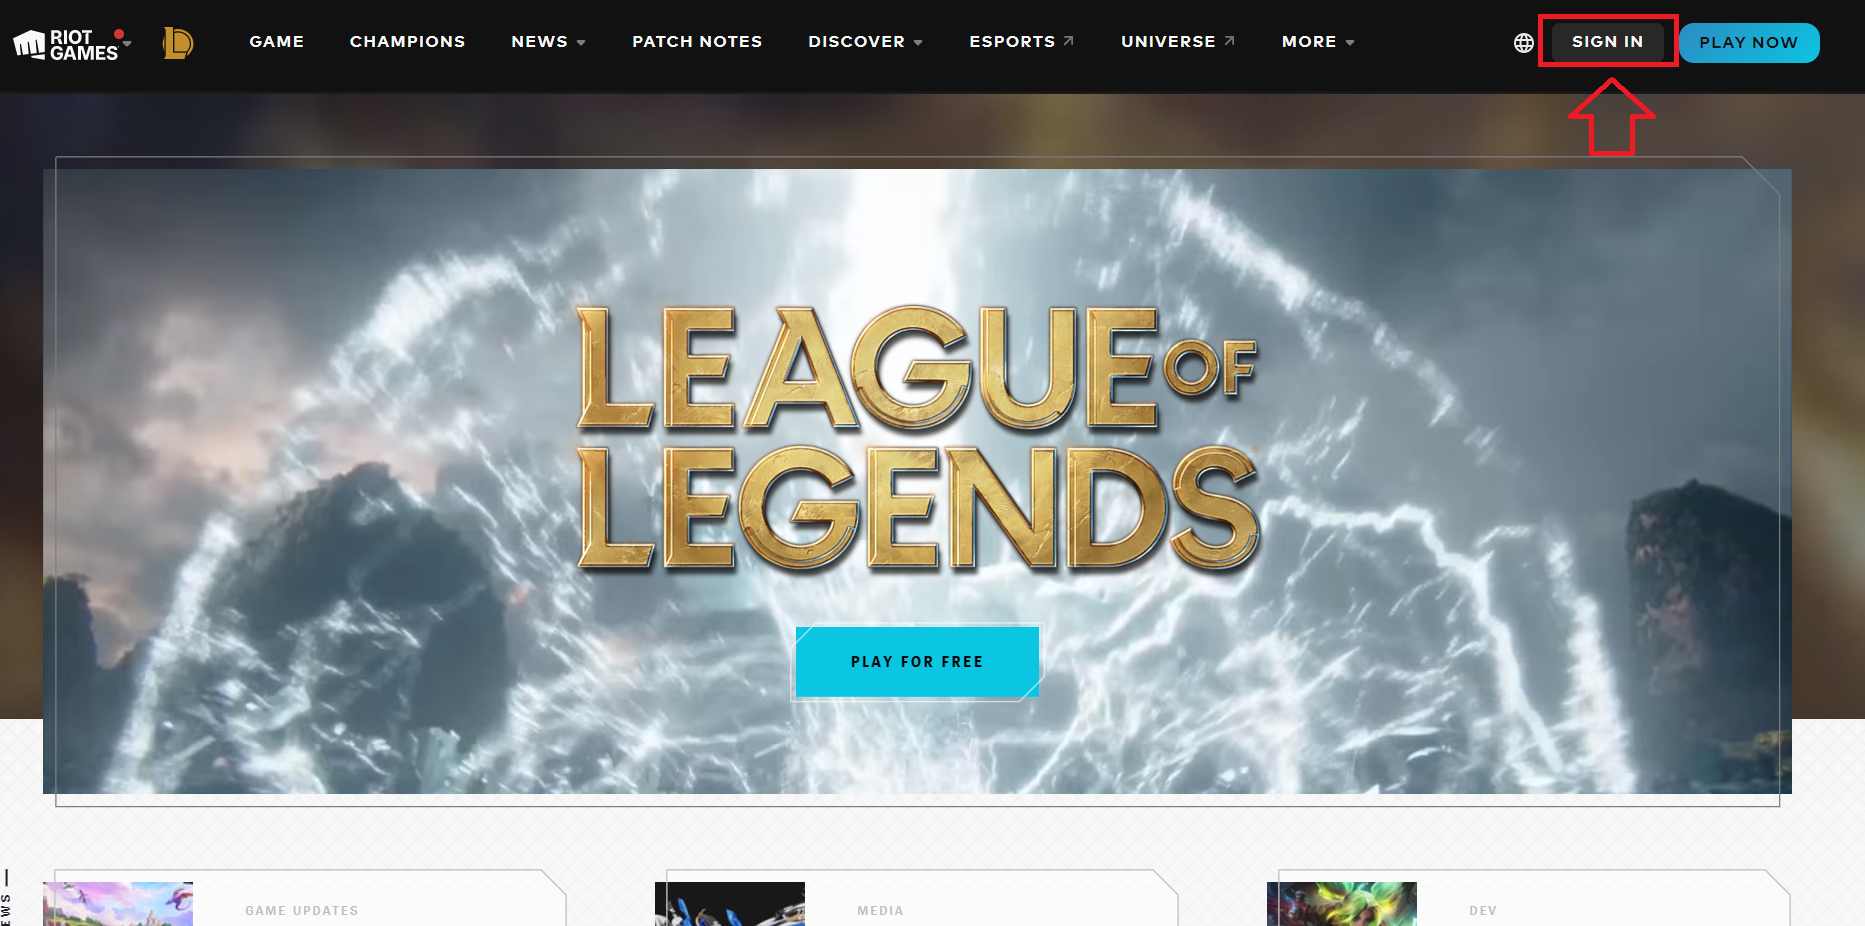 League Client Update 2022 - League of Legends 